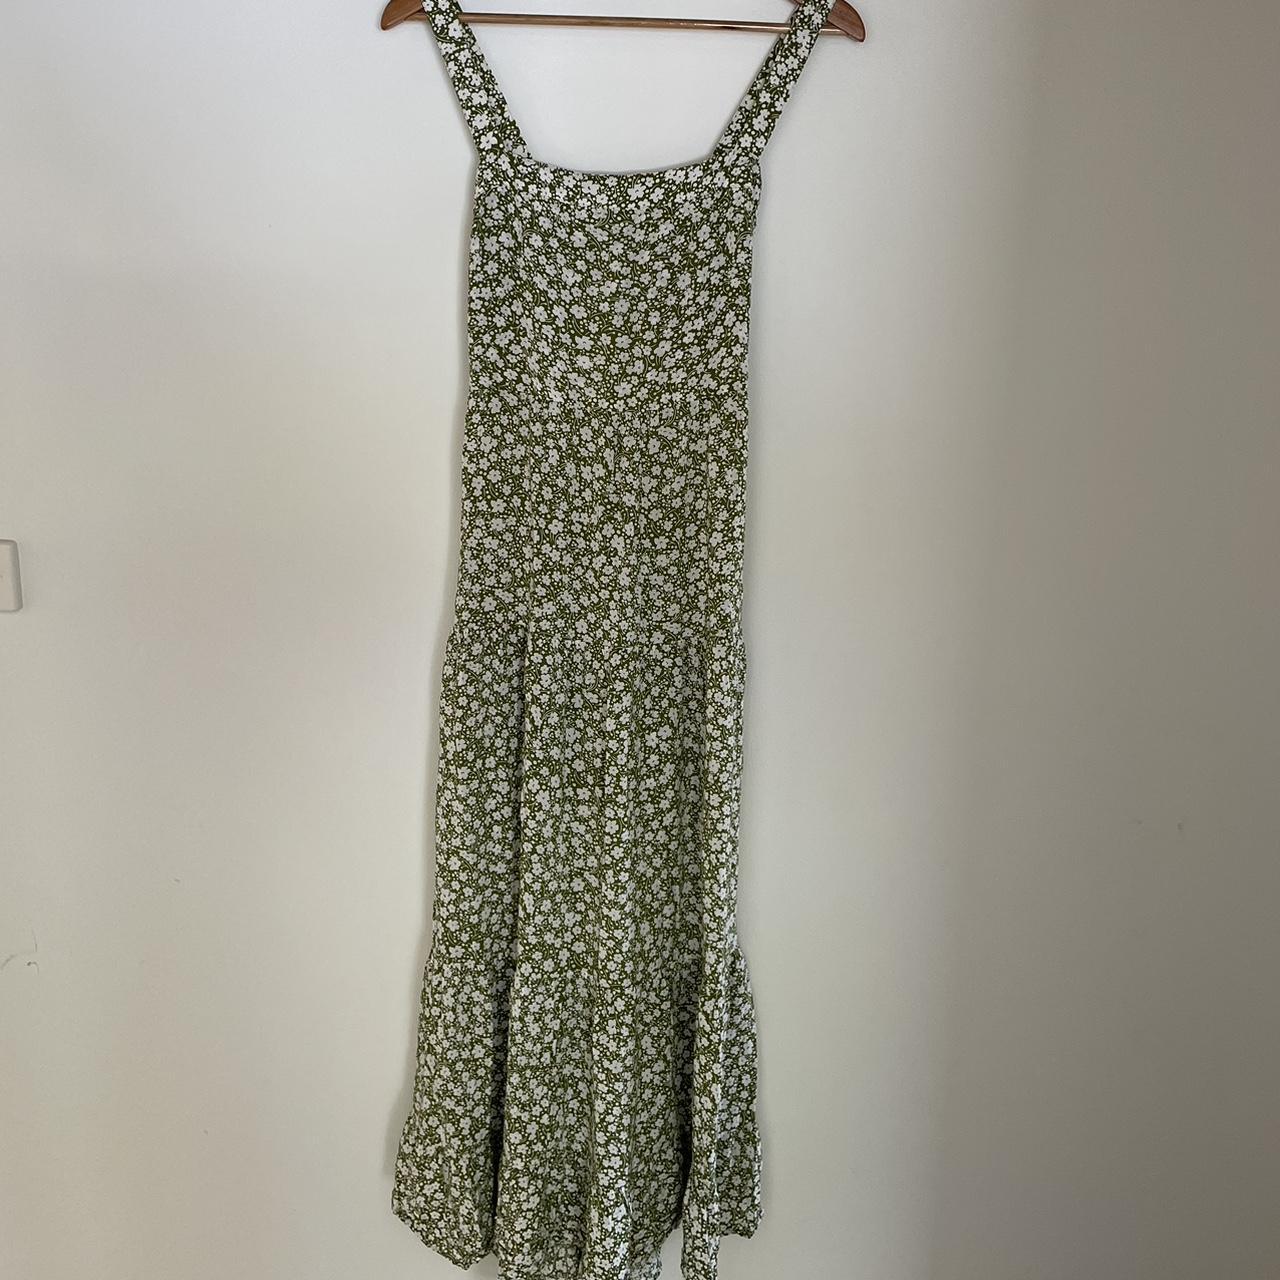 Ghanda green & white flower dress Size... - Depop